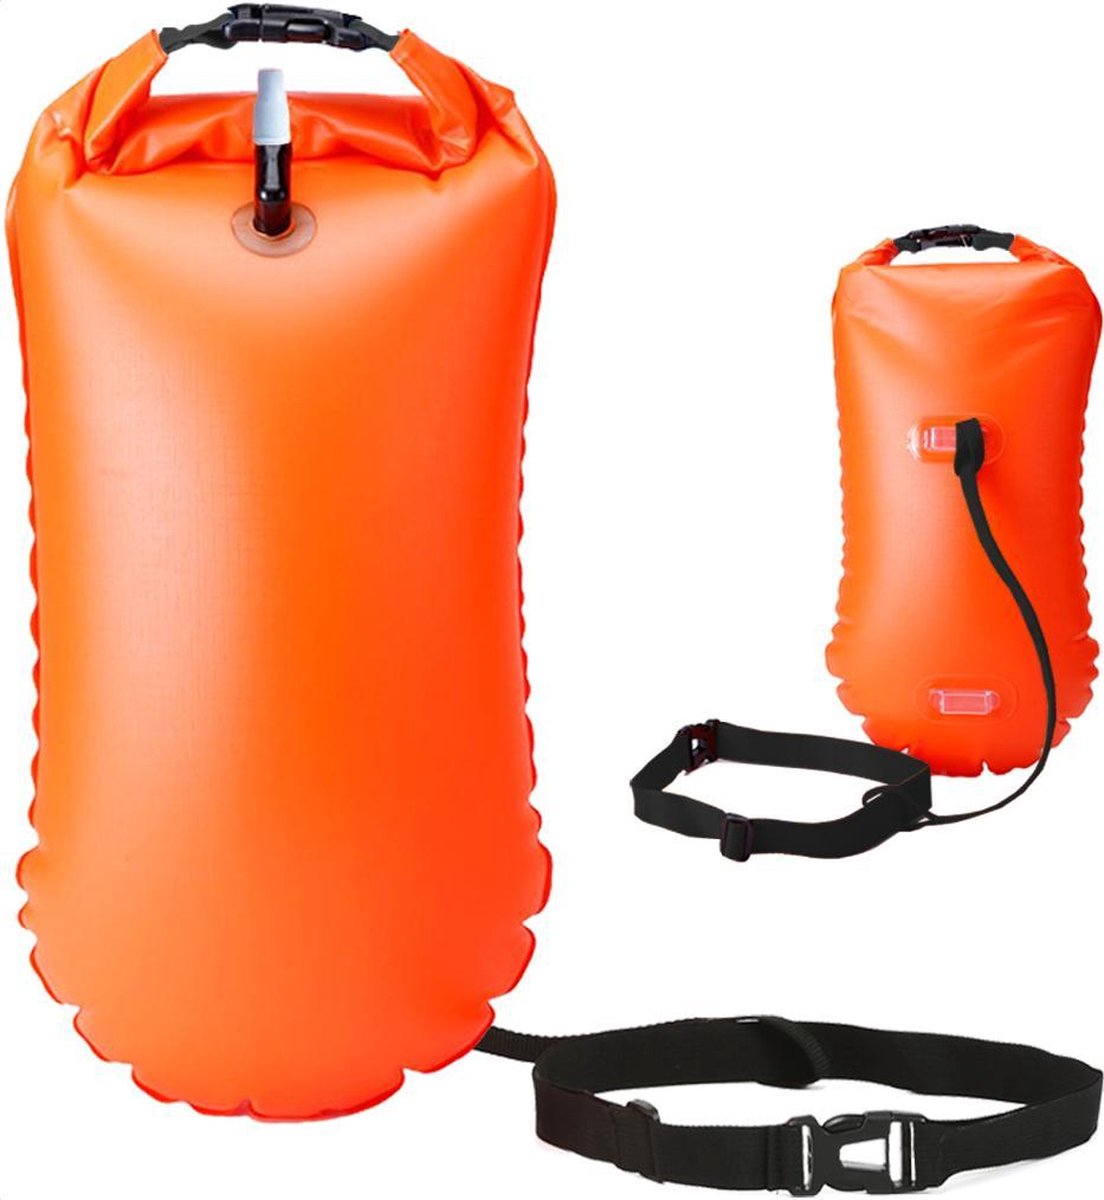 Zwemboei voor openwaterzwemmen - Safeswimmer - Zwemboei - Reddingsboei - Zwemboei met drybag - 20 liter - Oranje - Merkloos